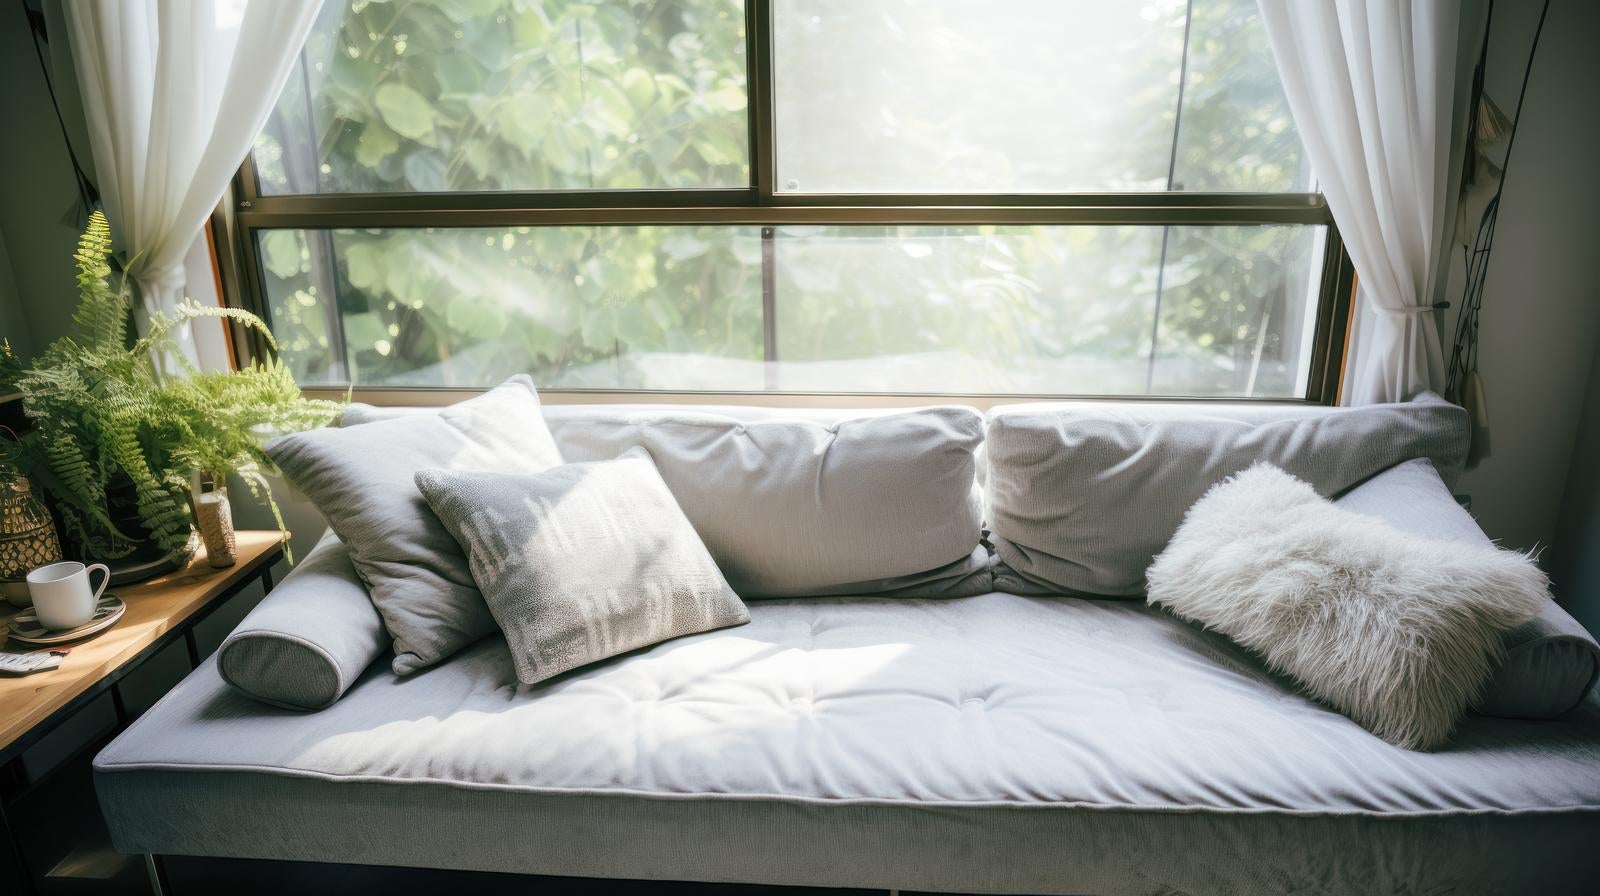 「窓際のグレーのソファー」の写真